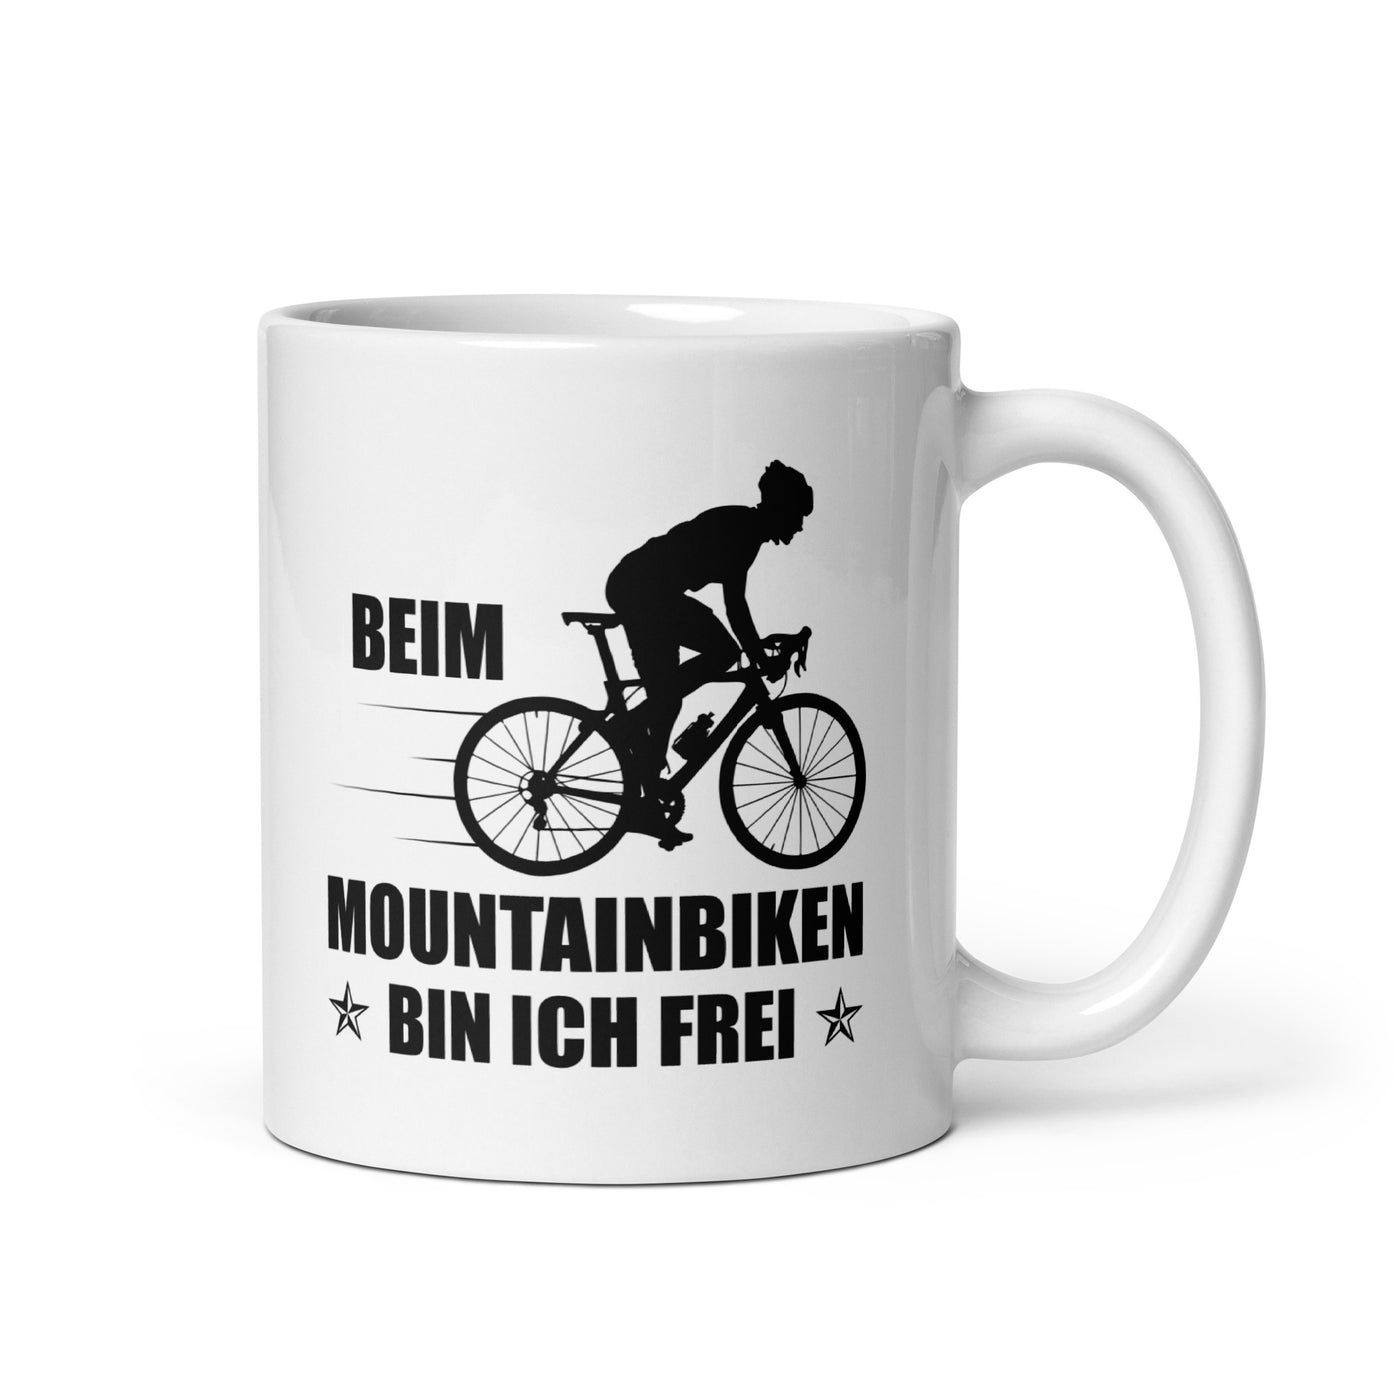 Beim Mountainbiken Bin Ich Frei 2 - Tasse fahrrad